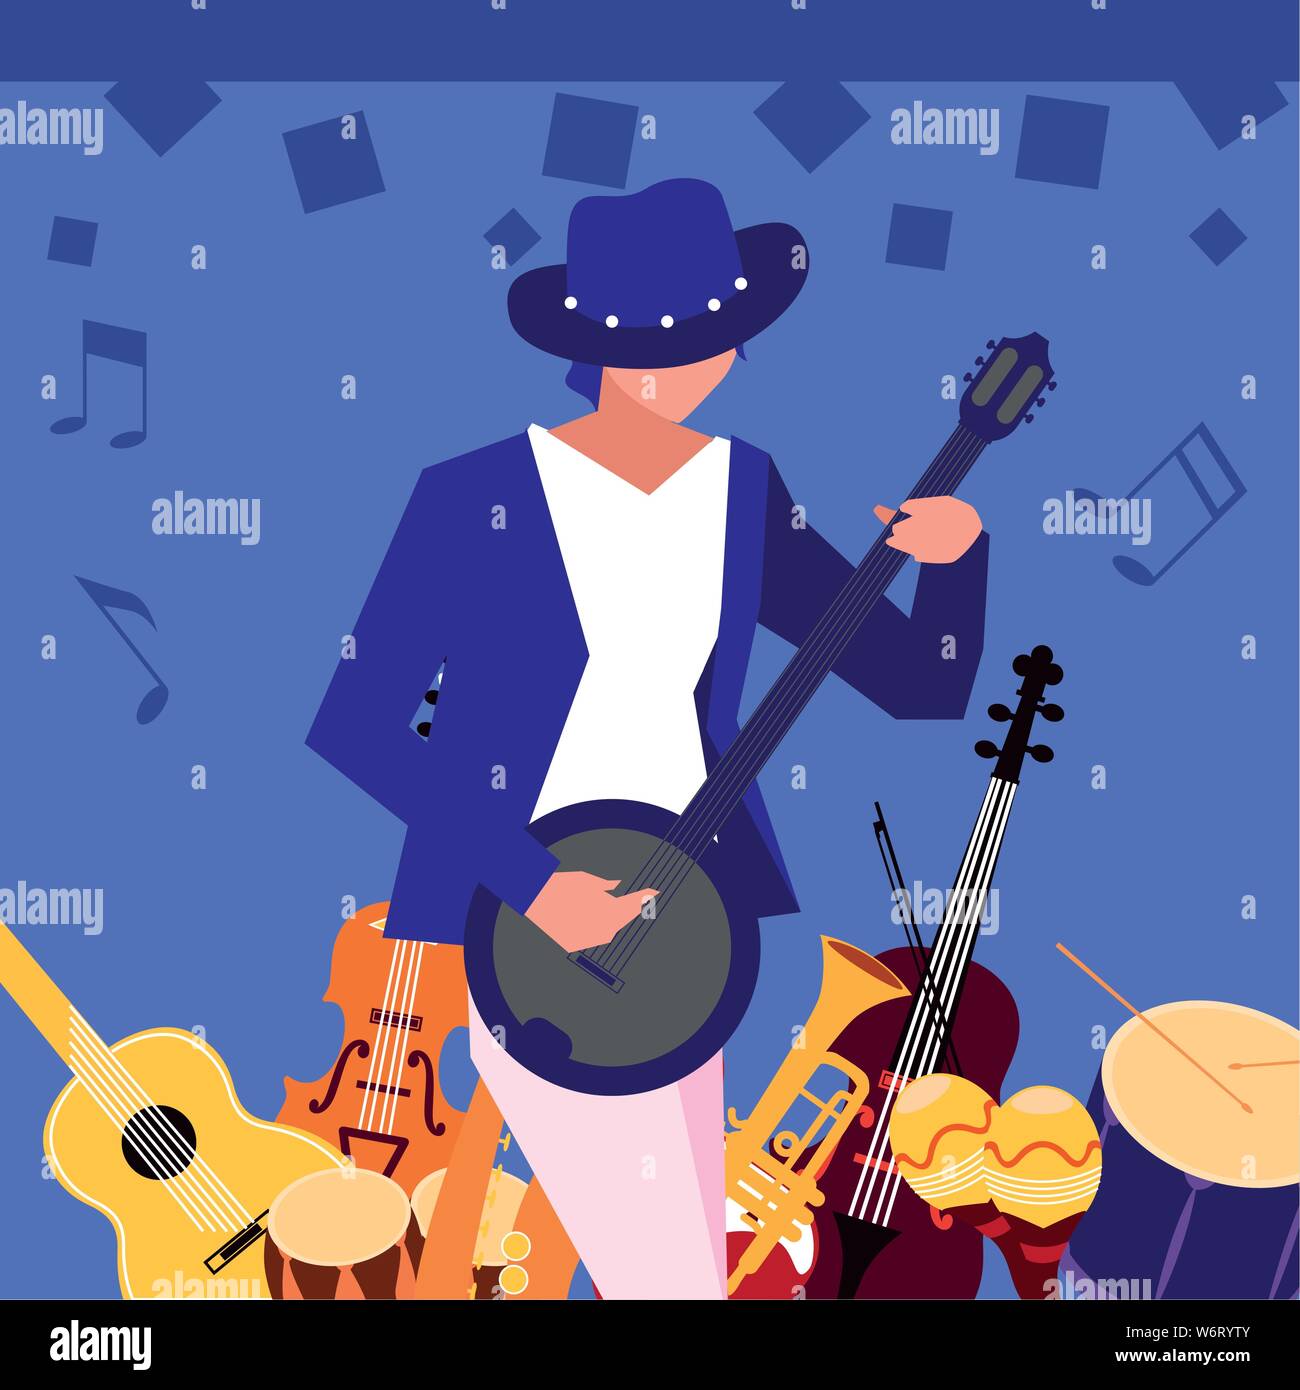 musician man banjo playing instrument vector illustration Stock Vector